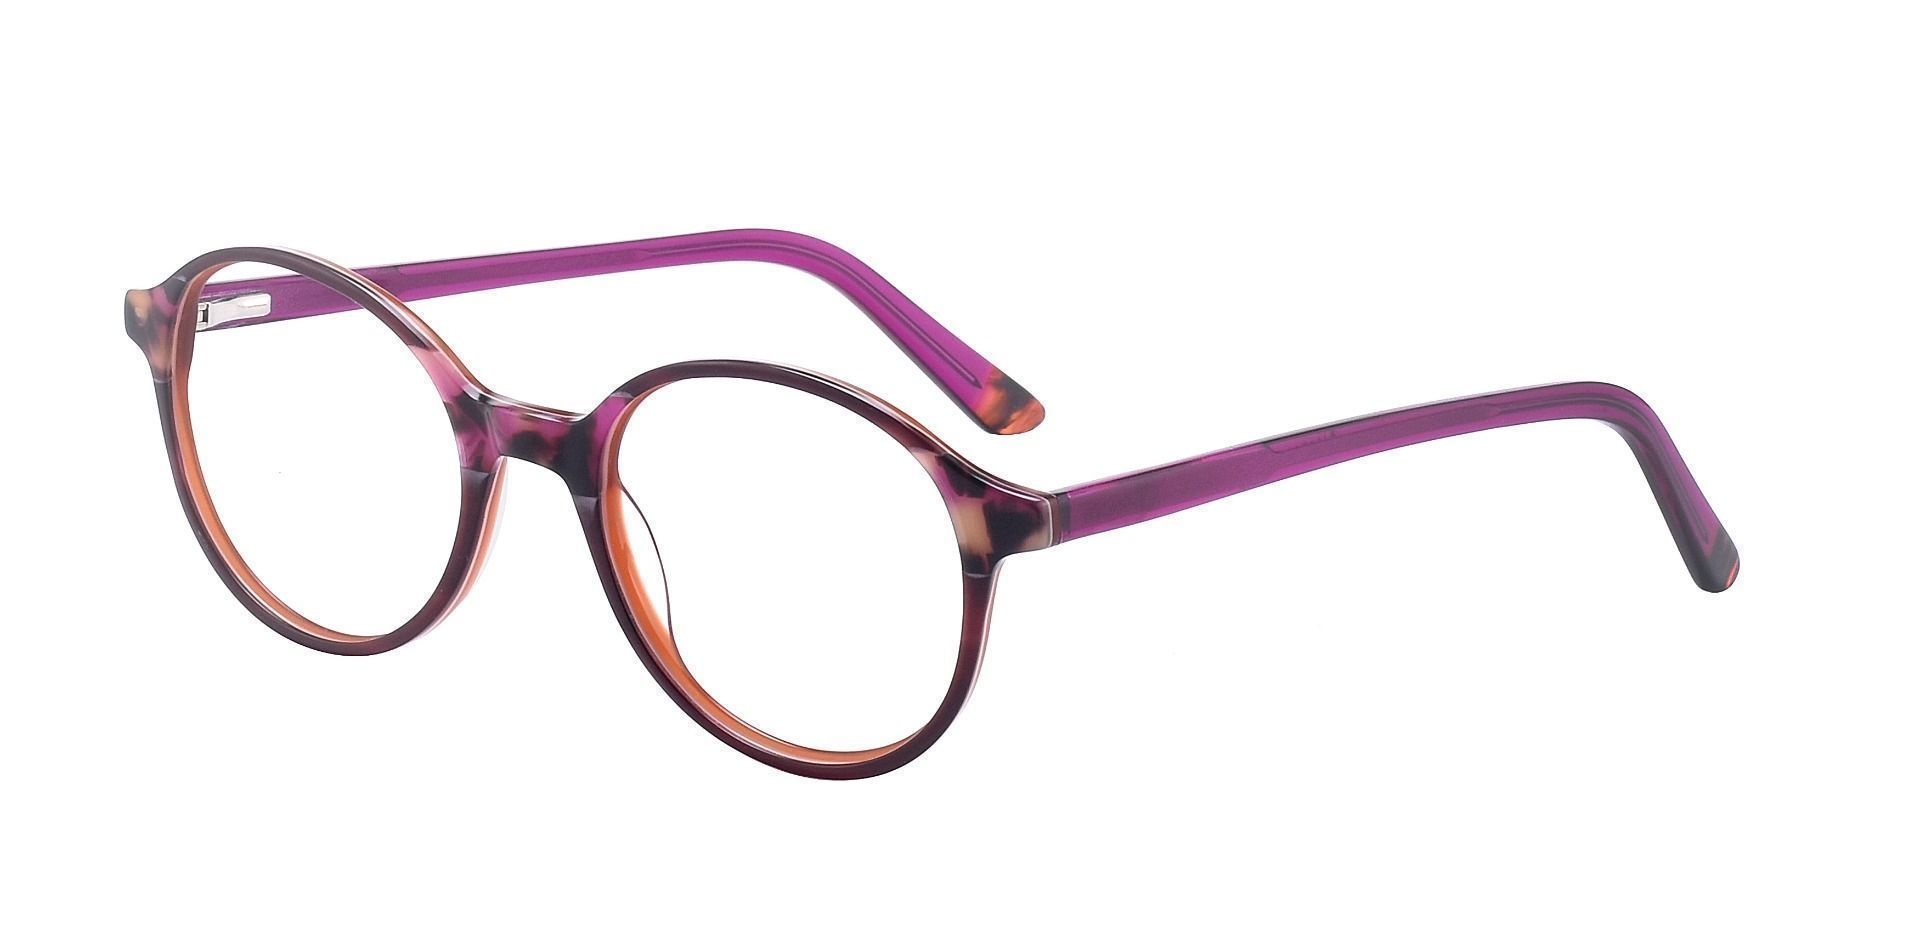 Bellamy Oval Non-Rx Glasses - Purple